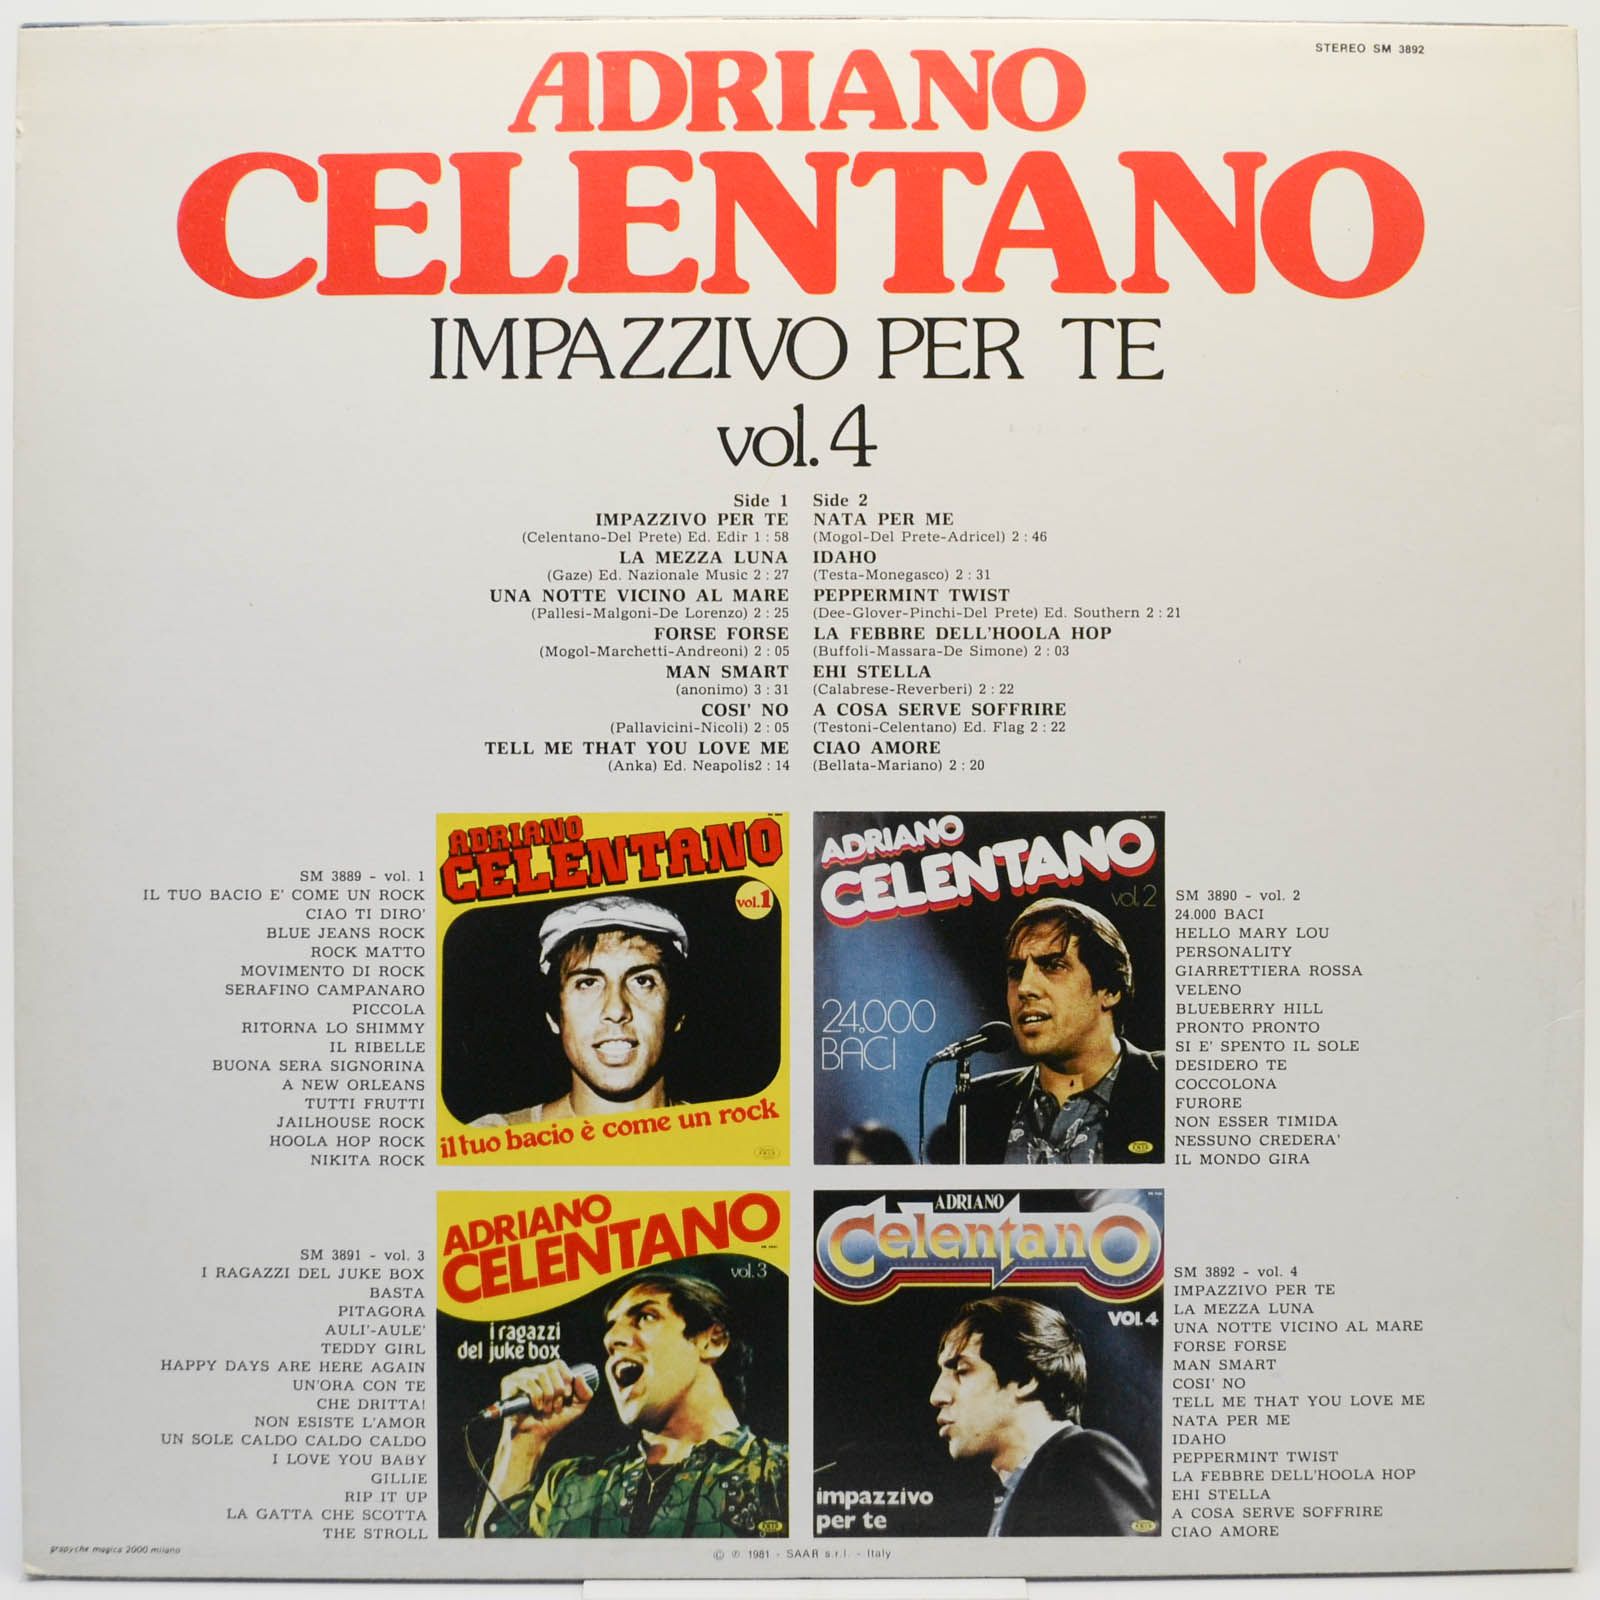 Adriano Celentano — Vol. 4 - Impazzivo Per Te (Italy), 1981